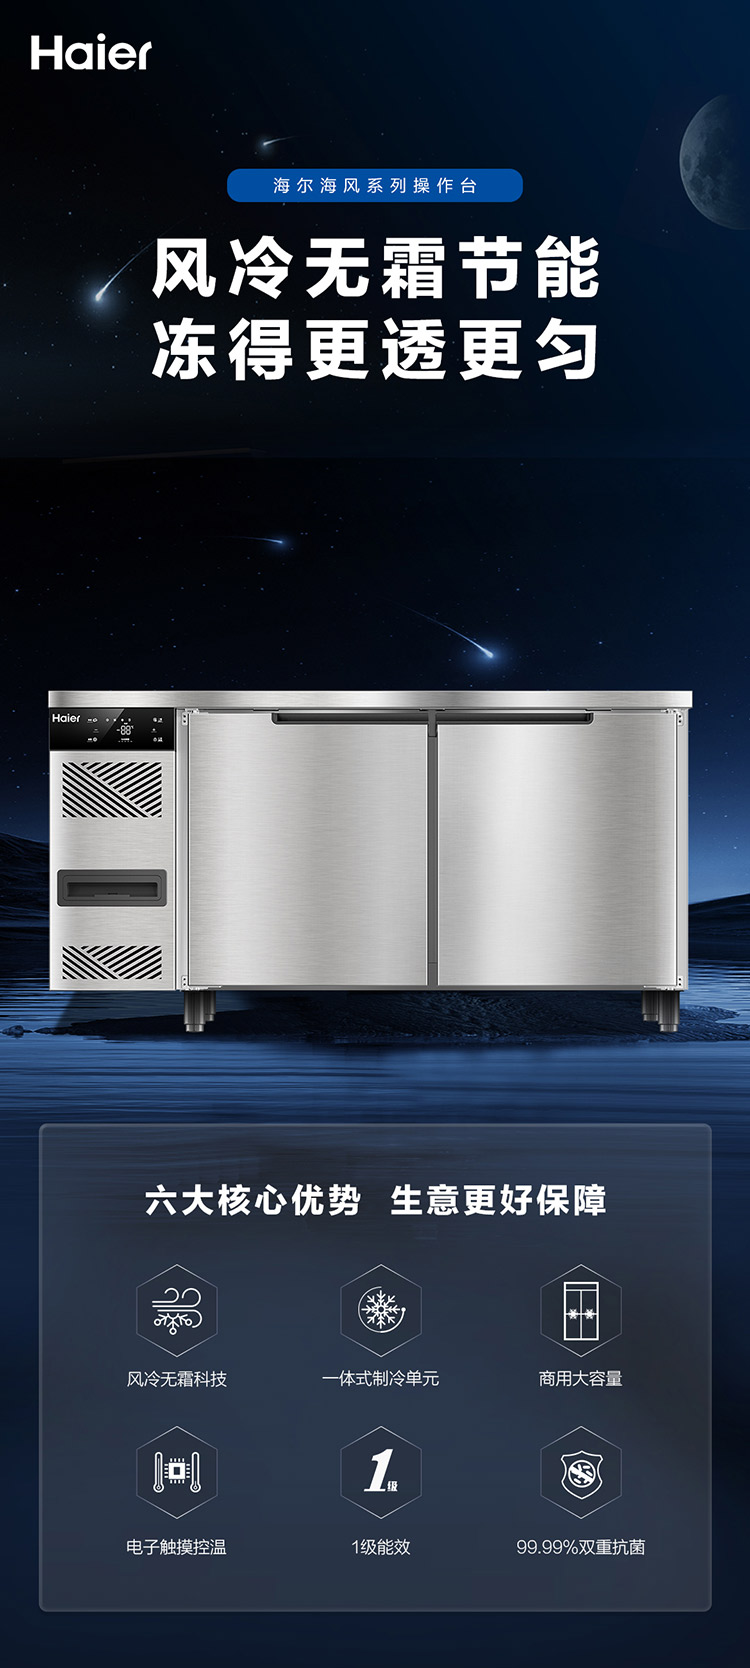 海尔风冷1.5米两门冷冻柜SP-426D2W